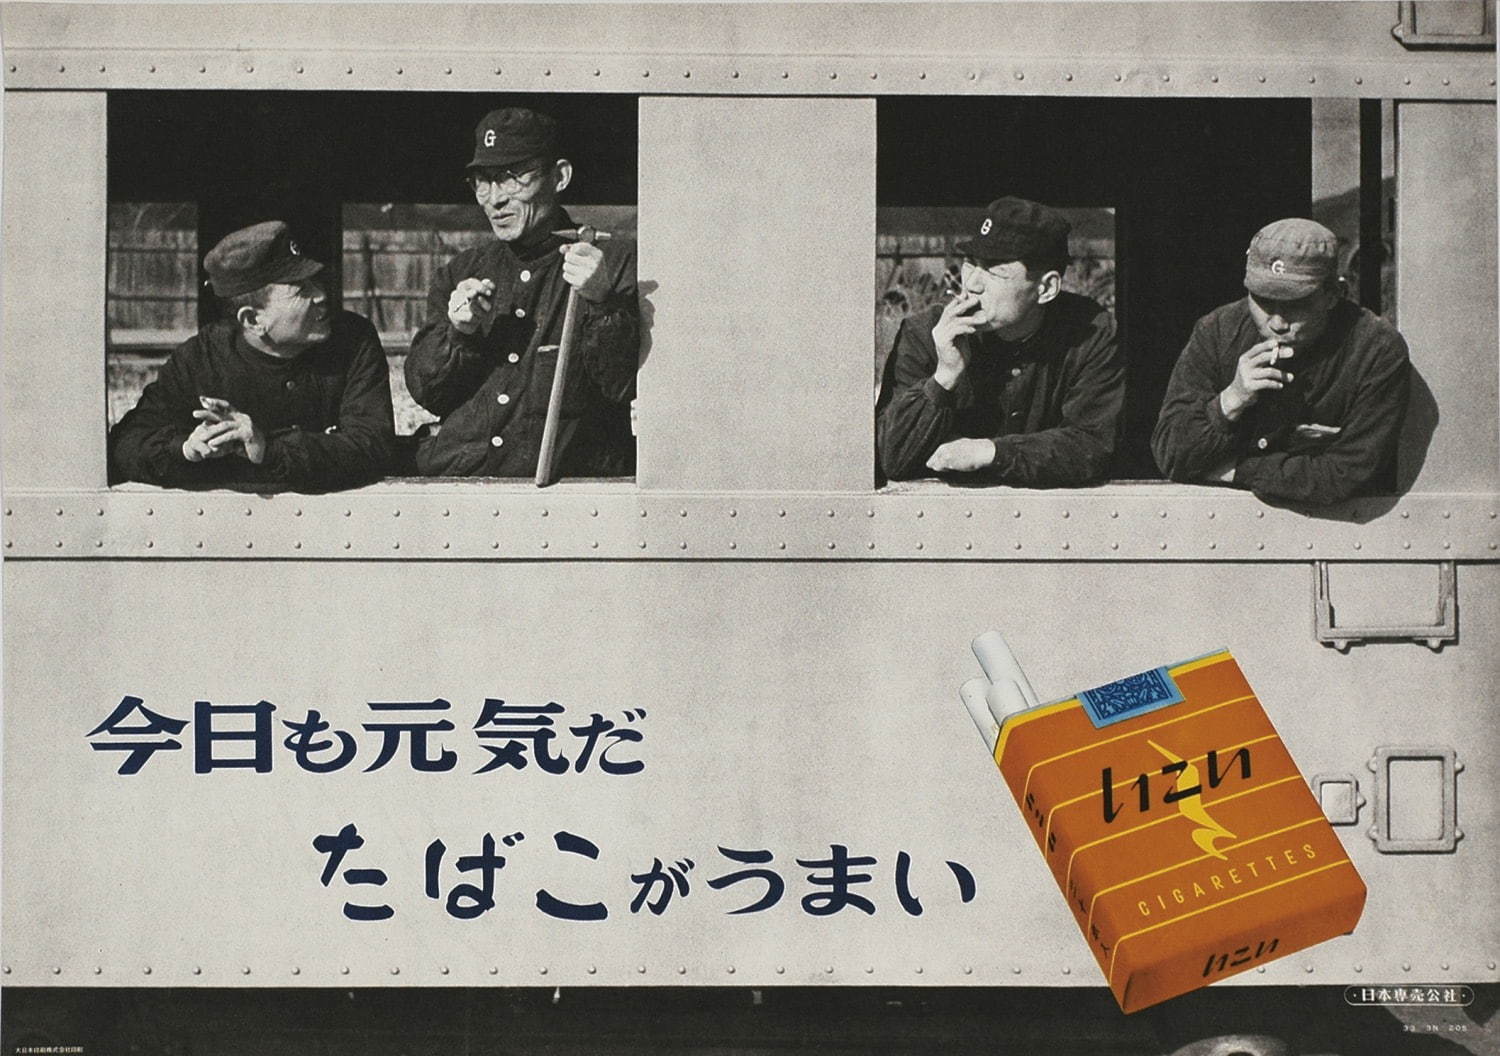 日本専売公社「いこい」ポスター、1958年、オフセット、たばこと塩の博物館蔵